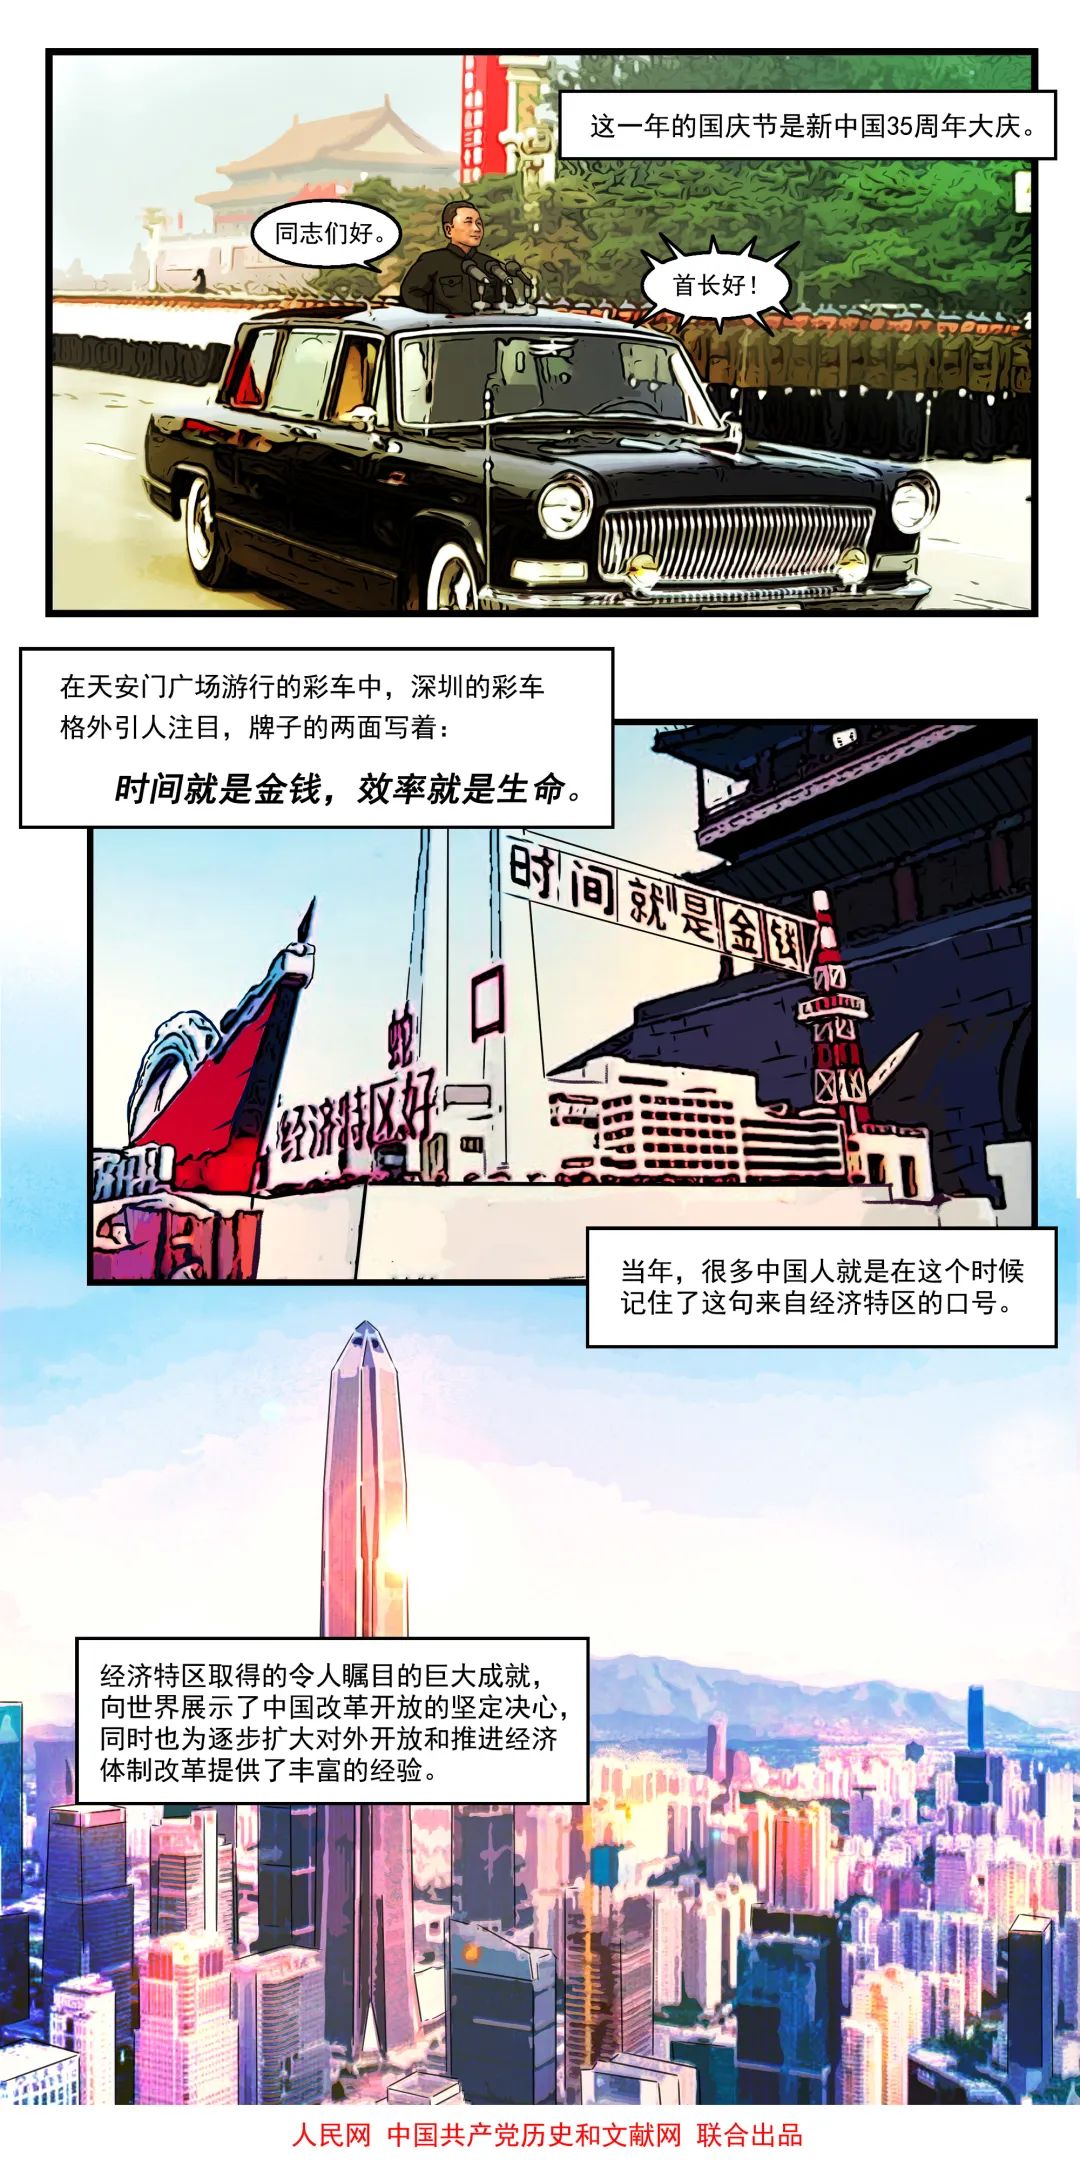 深圳经济特区于1980年8月26日正式成立,是中国最早实行对外开放的四个